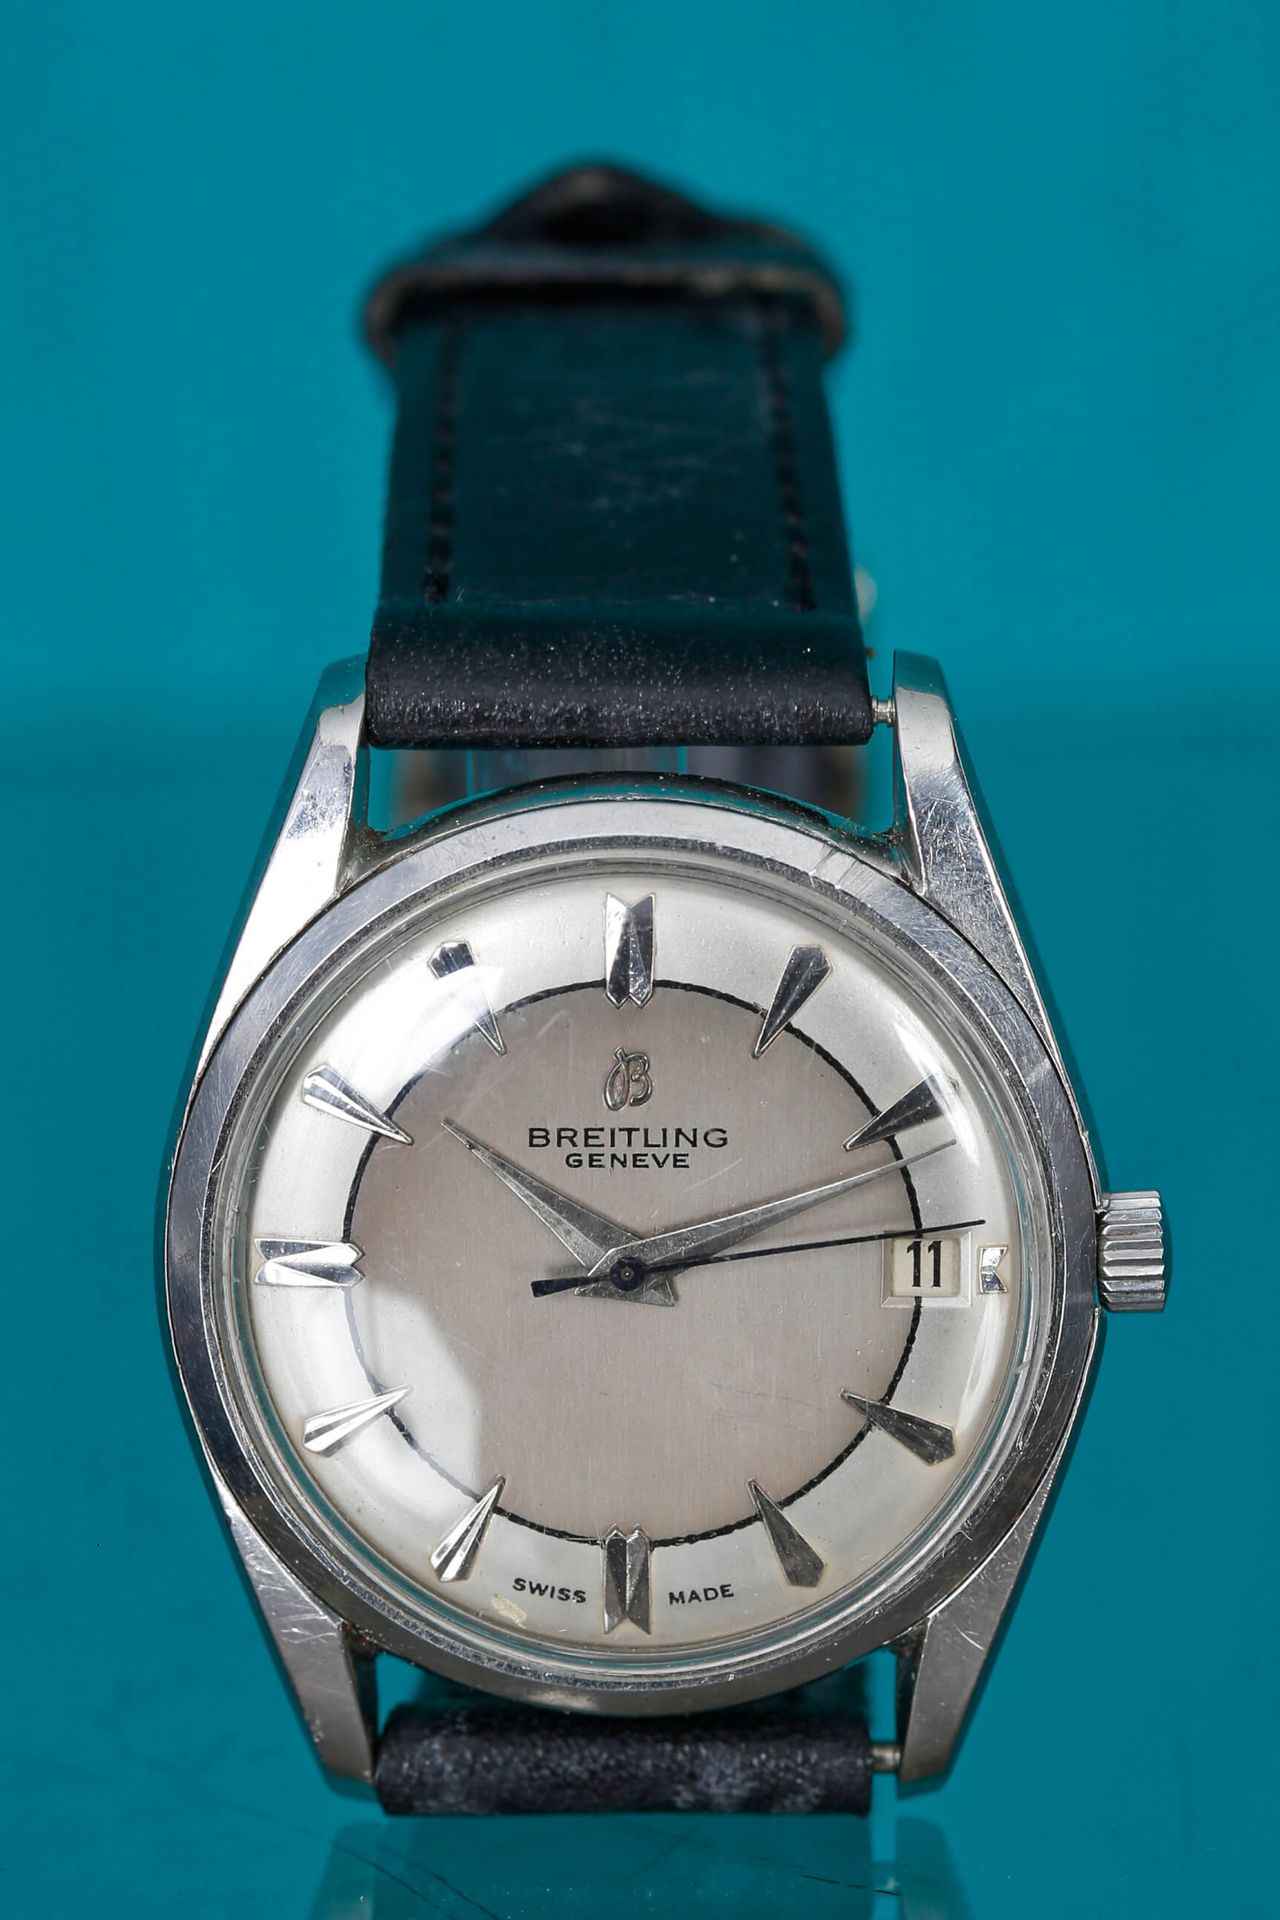 Breitling - Wittnauer - Jaeger 3 montres > Breitling, Watch ref. 4001, circa 196&hellip;